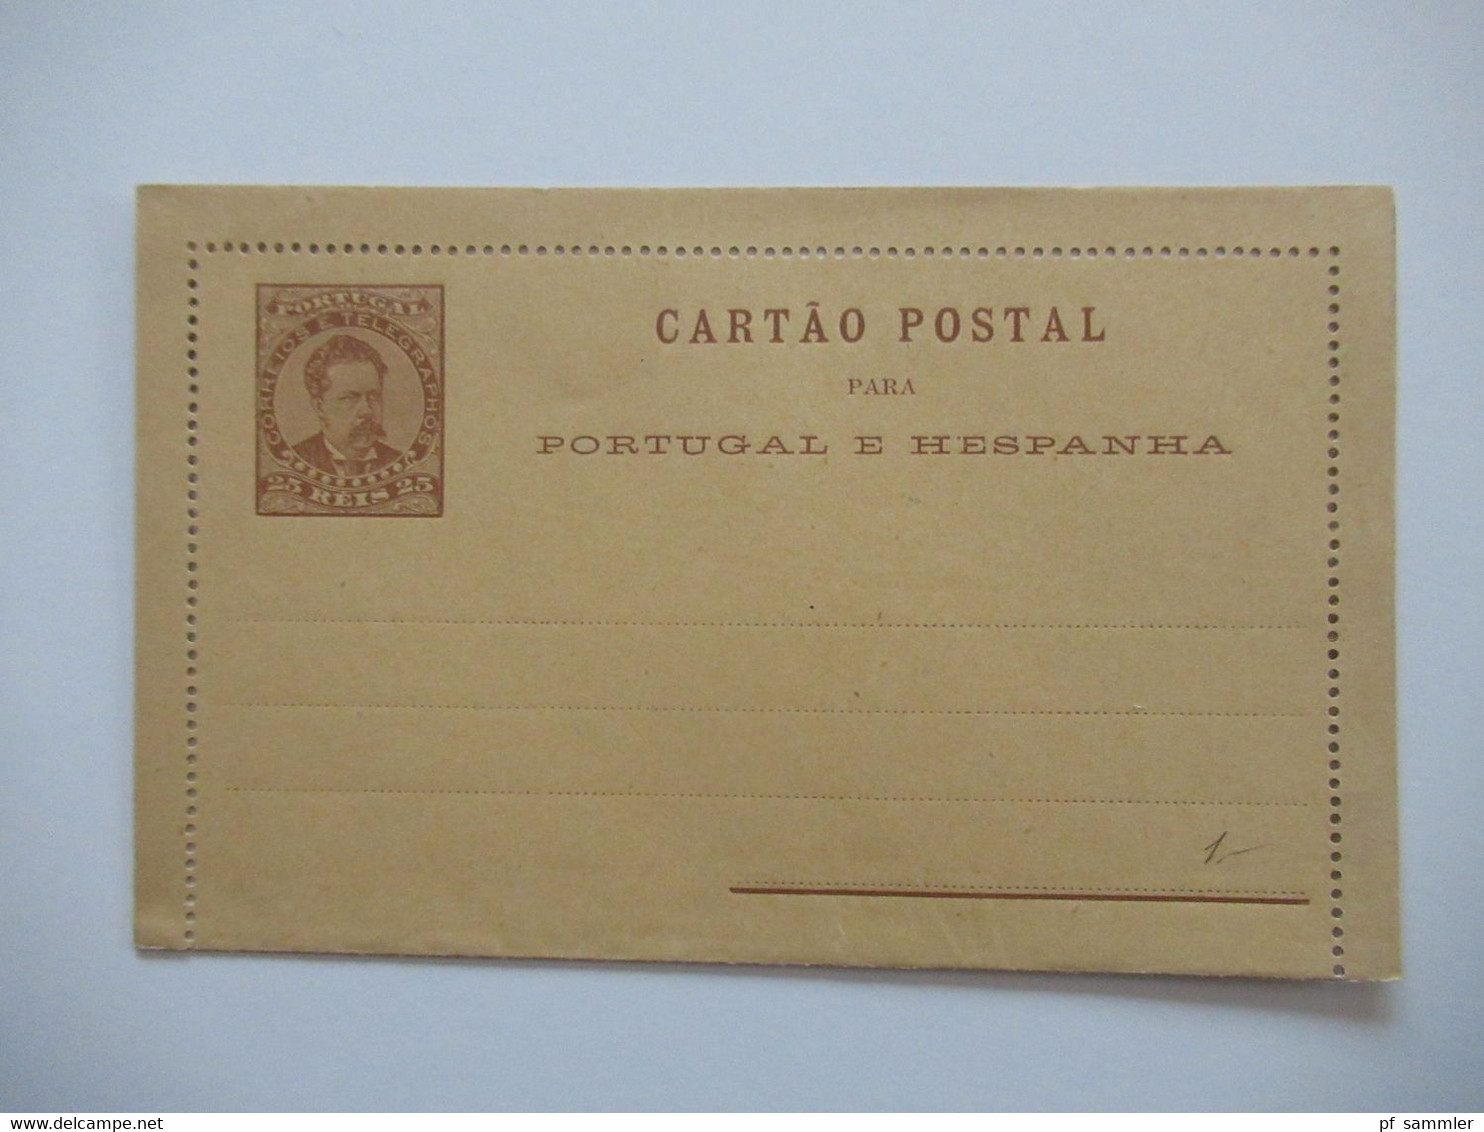 Portugal Ganzsachen ab ca. 1889 - 1900 Auslandskarten 1x ungebrauchte Doppelkarte /verschiedene Stempel insgesamt 55 Stk